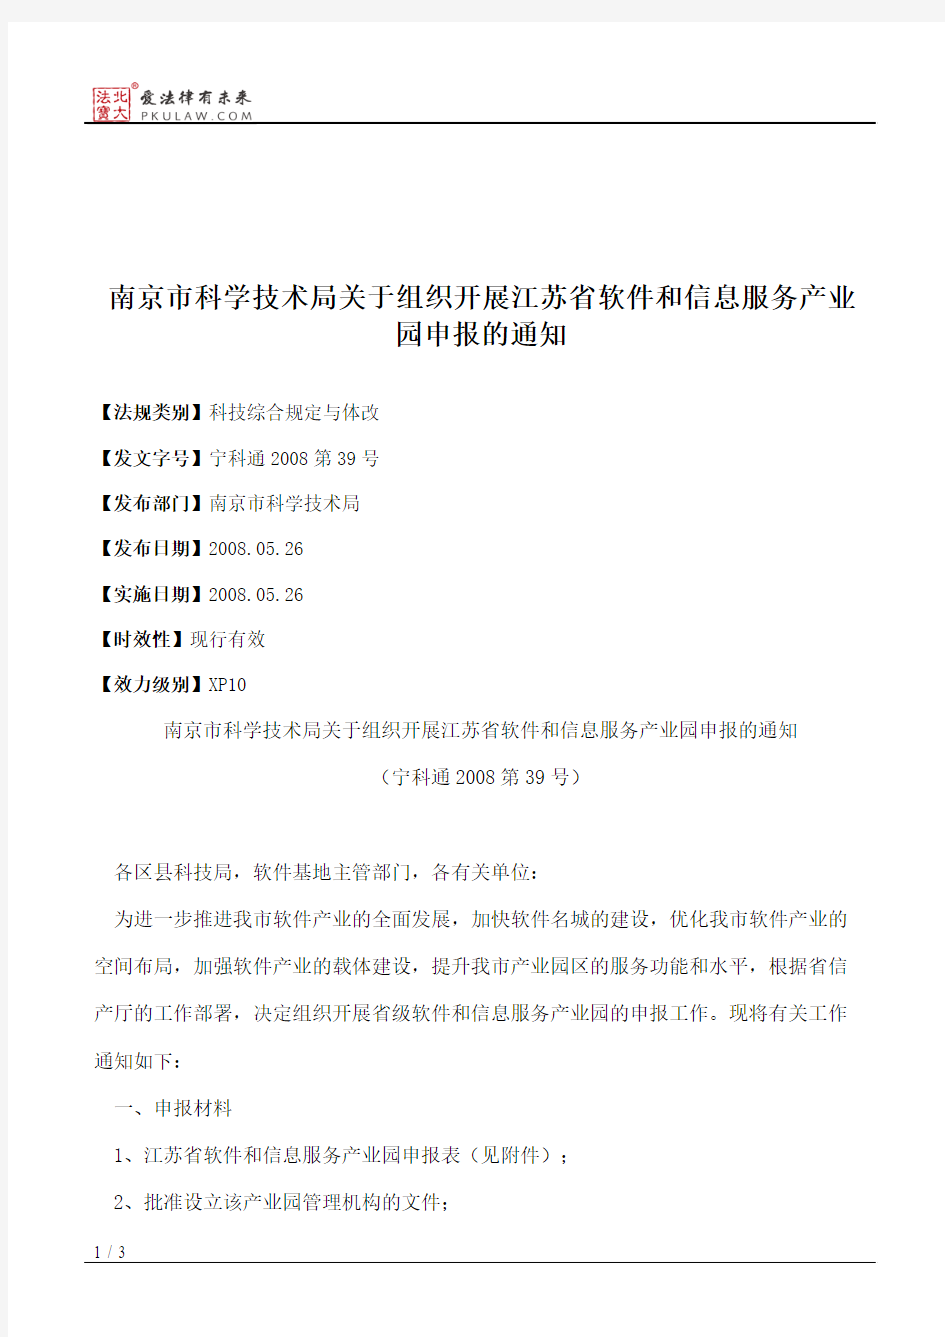 南京市科学技术局关于组织开展江苏省软件和信息服务产业园申报的通知